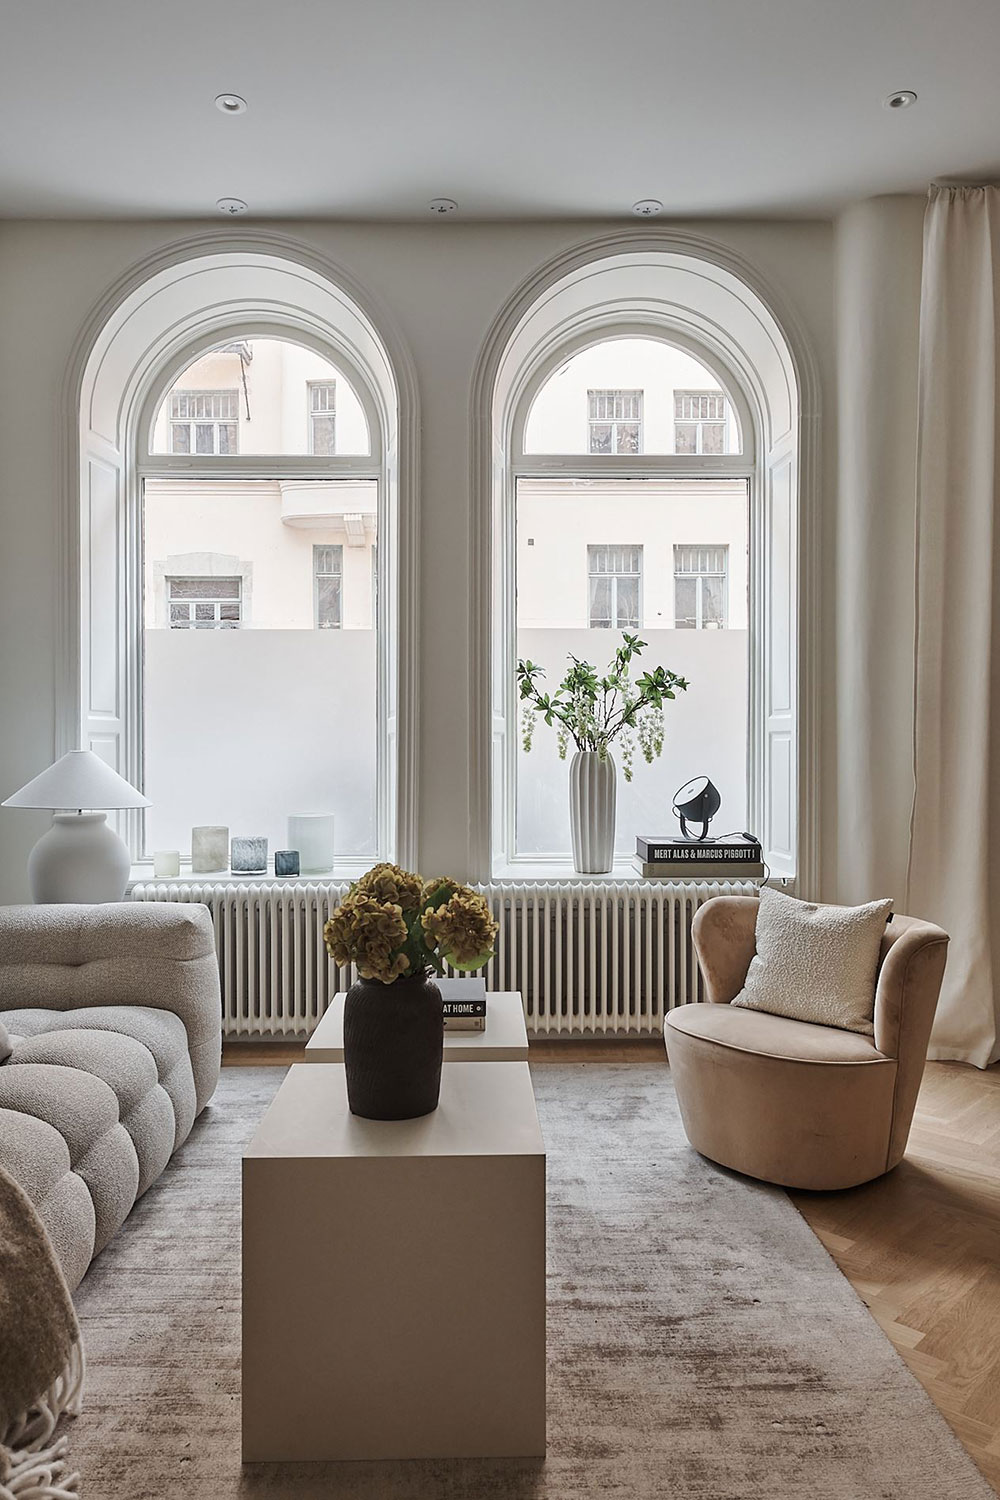 Арочные окна, высокие потолки и open-space: нежная квартира студия в Стокгольме (42 кв. м)